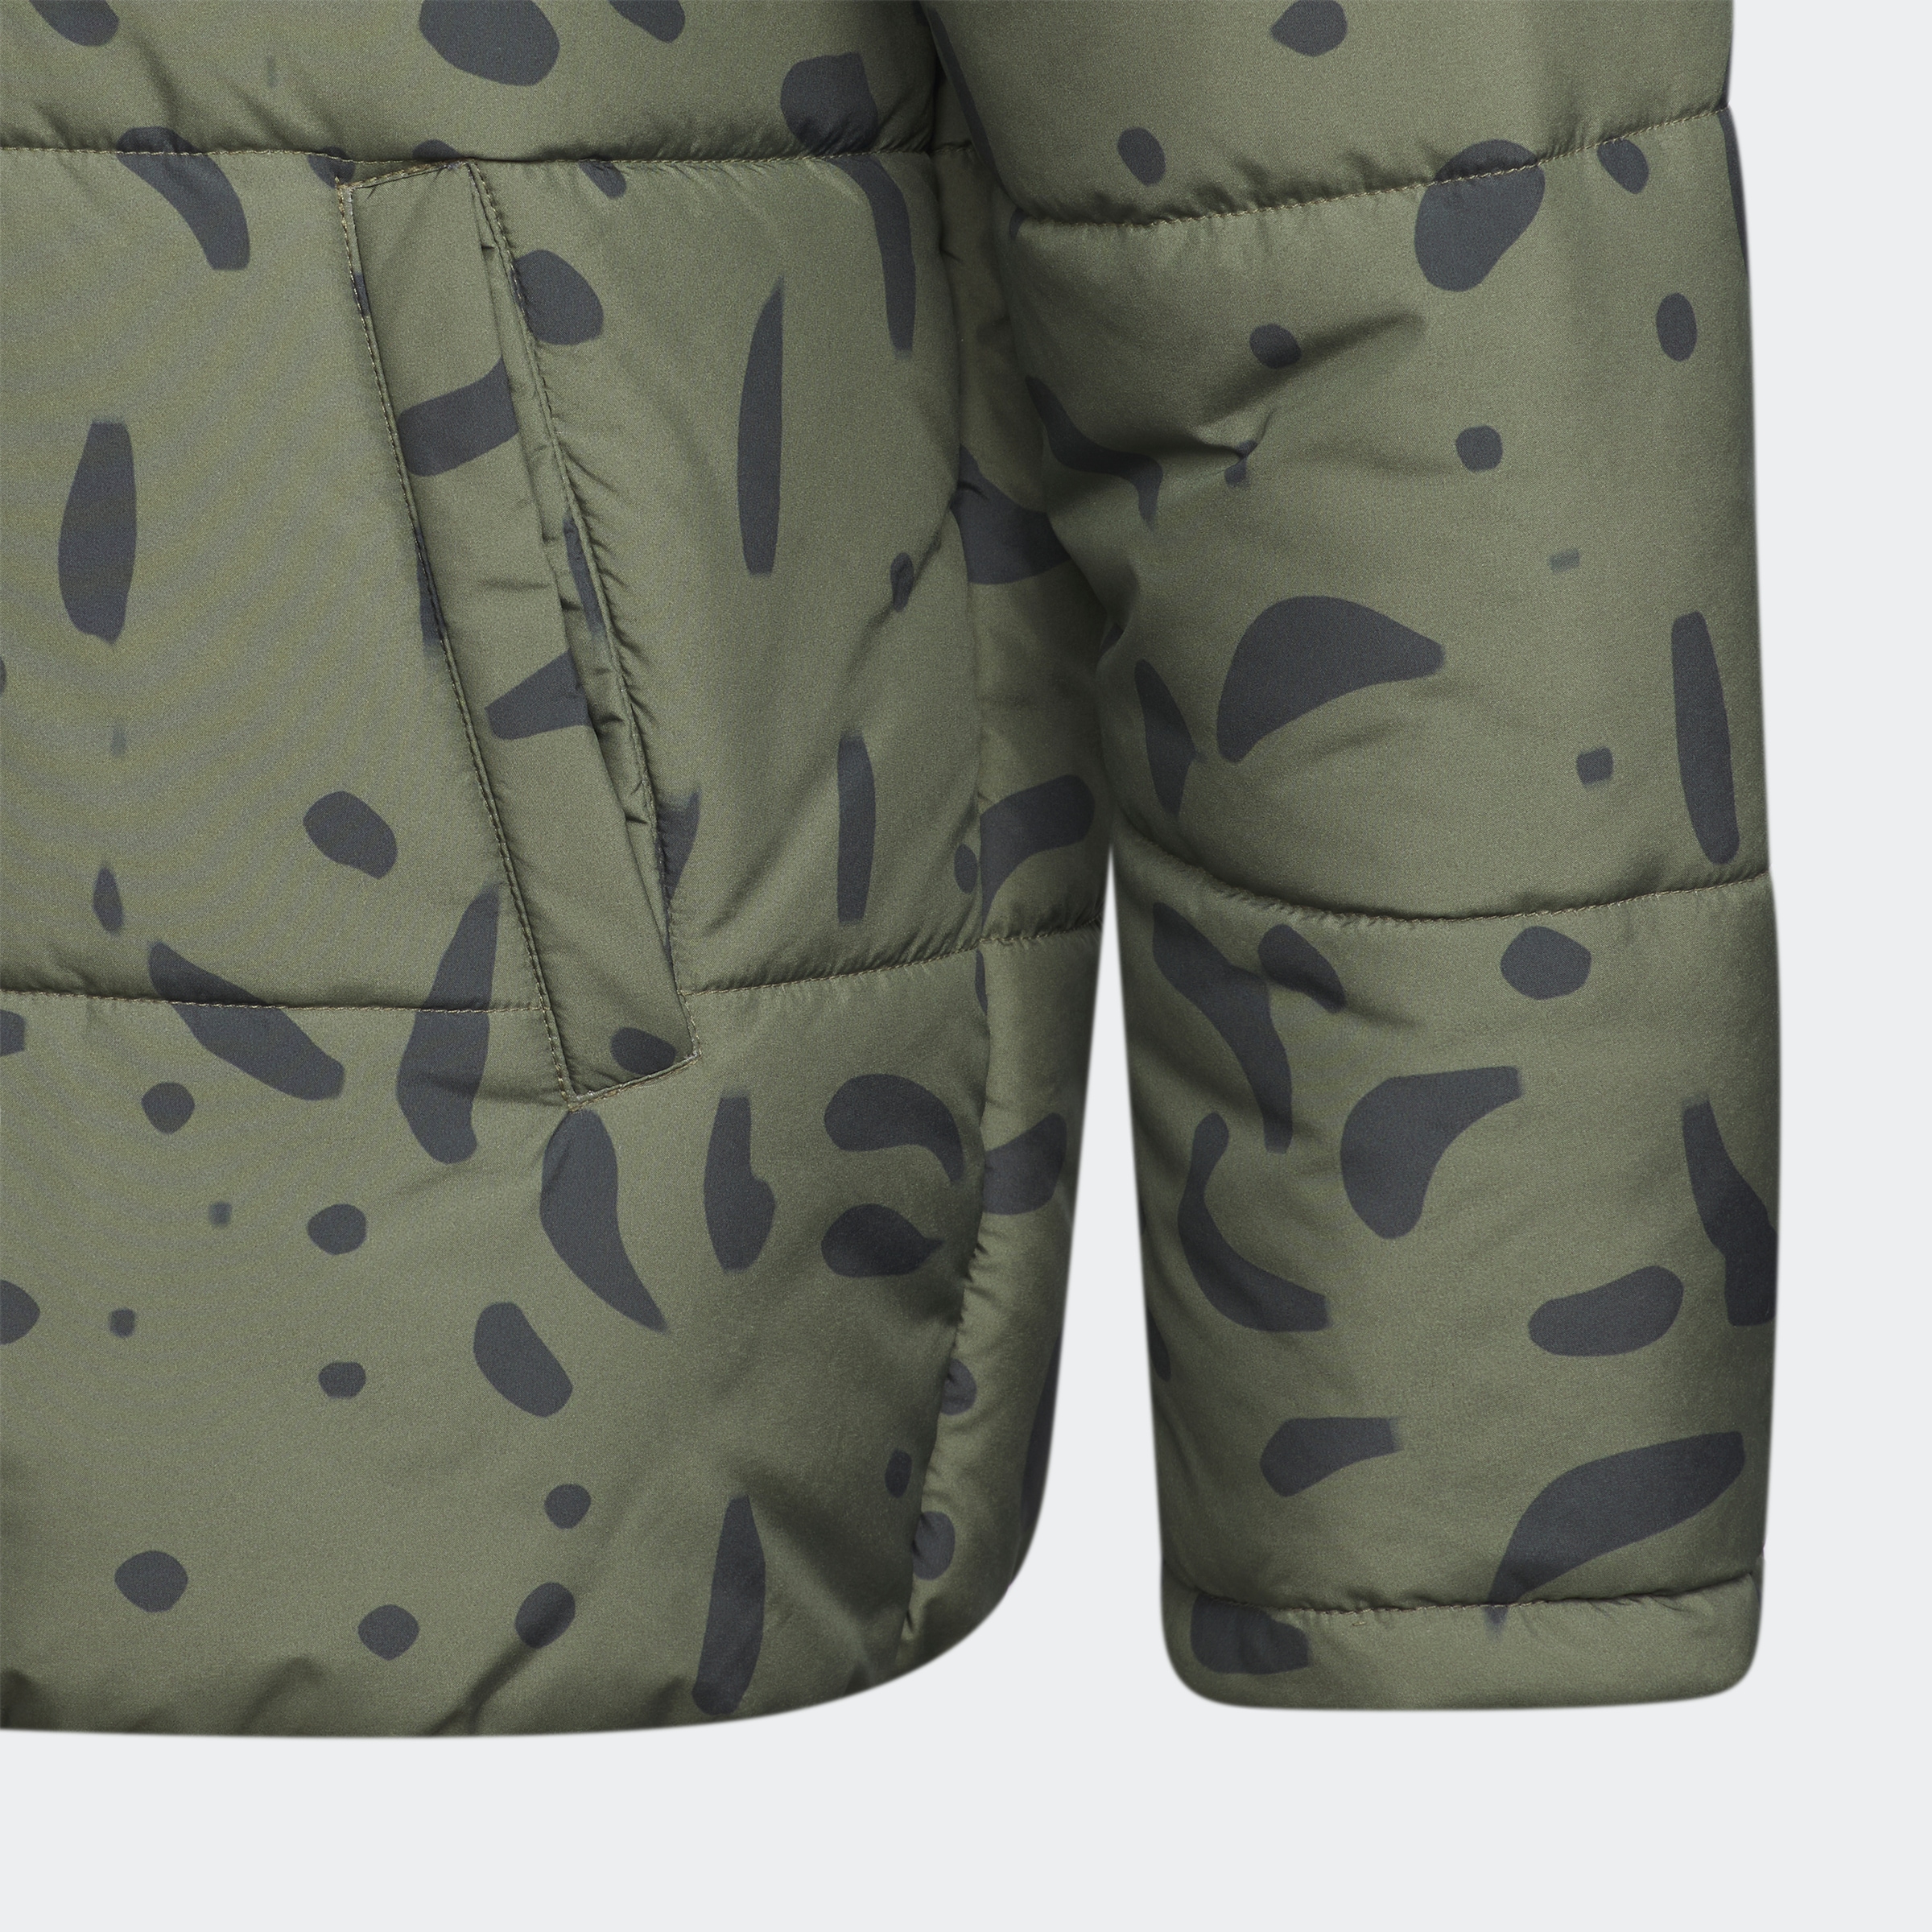 »JK Outdoorjacke REV Sportswear adidas bei JKT« PAD OTTO